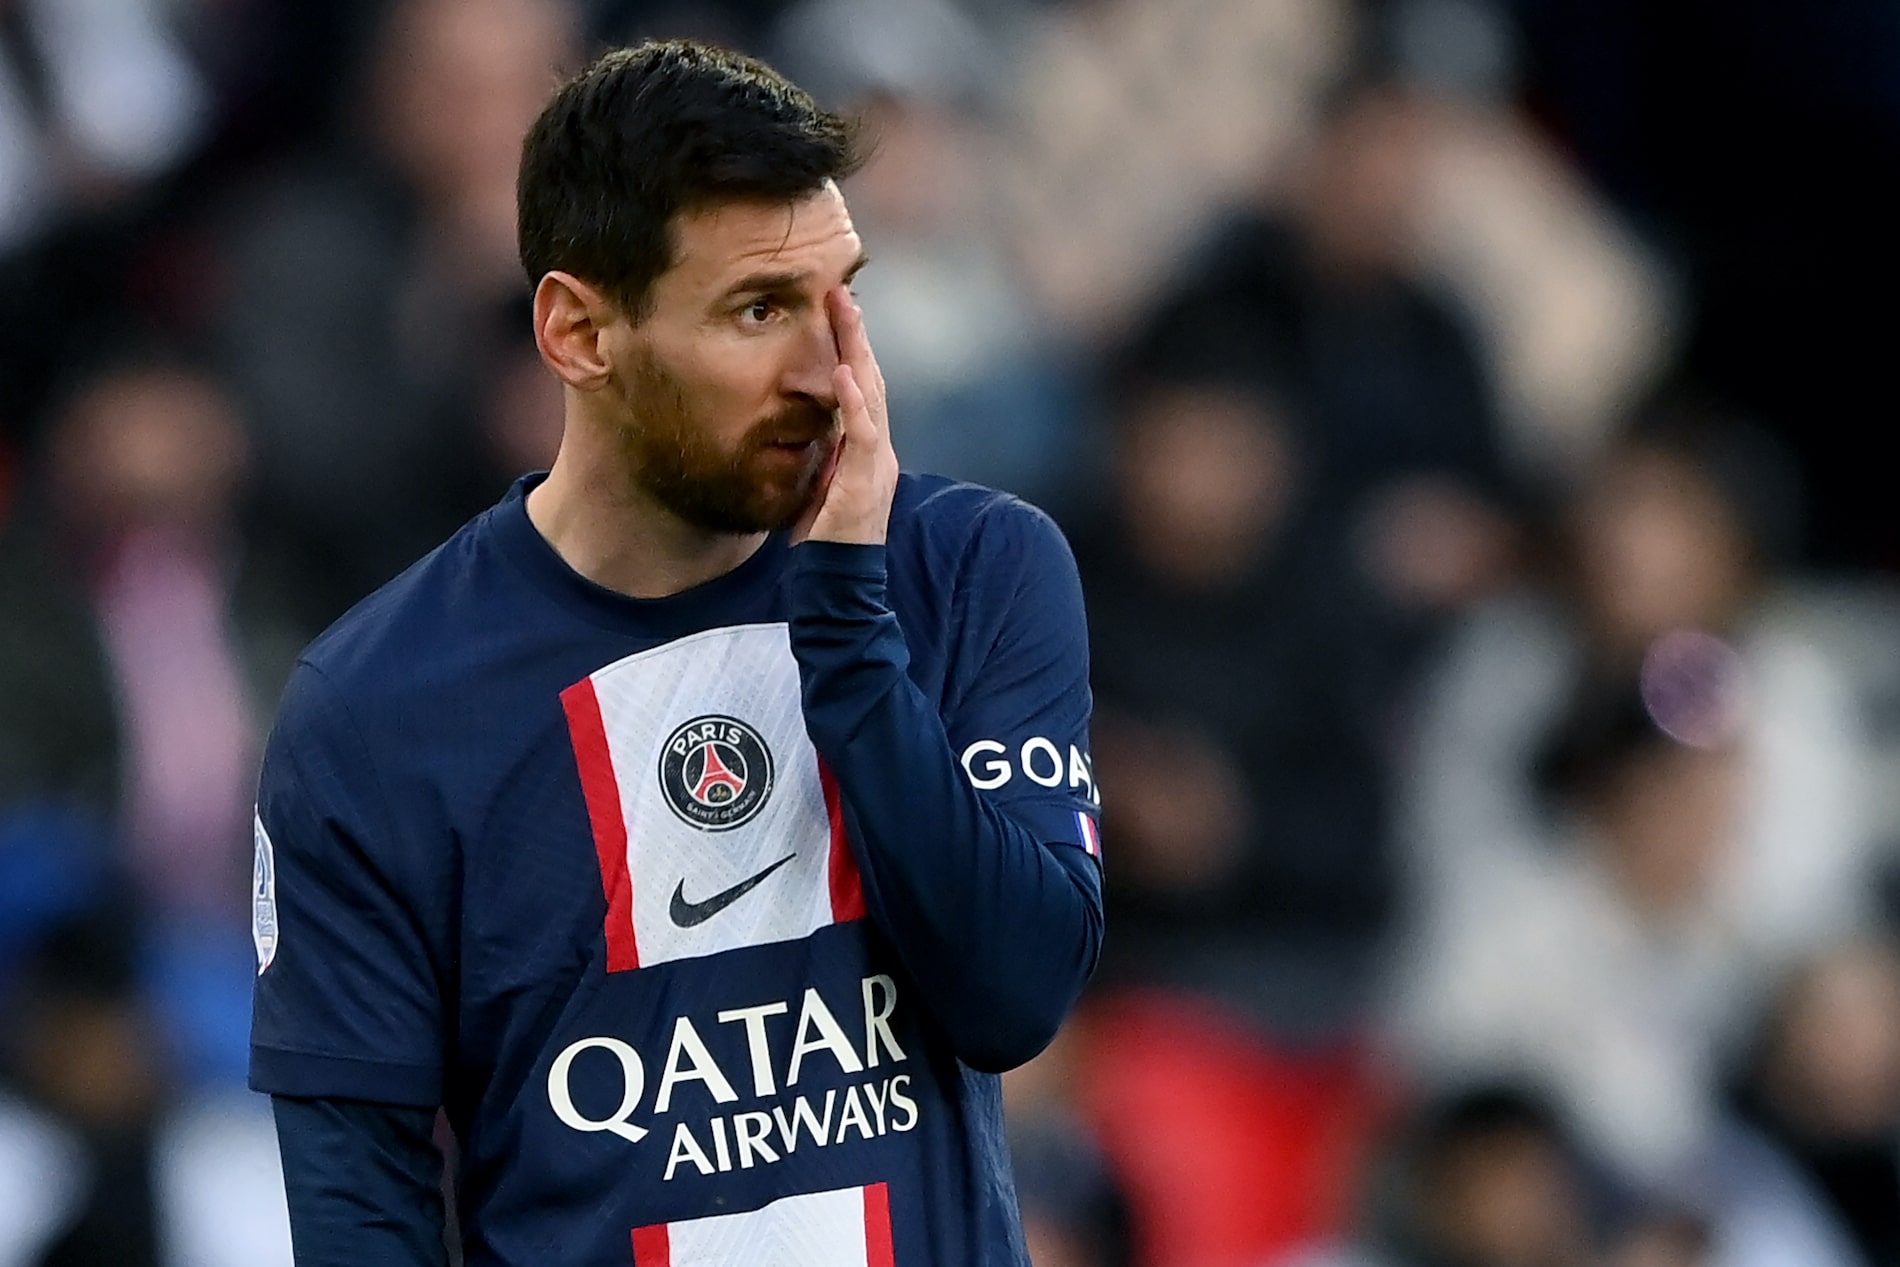 PSG naufraga ante Rennes y Messi recibe pitos en el Parque de los Príncipes